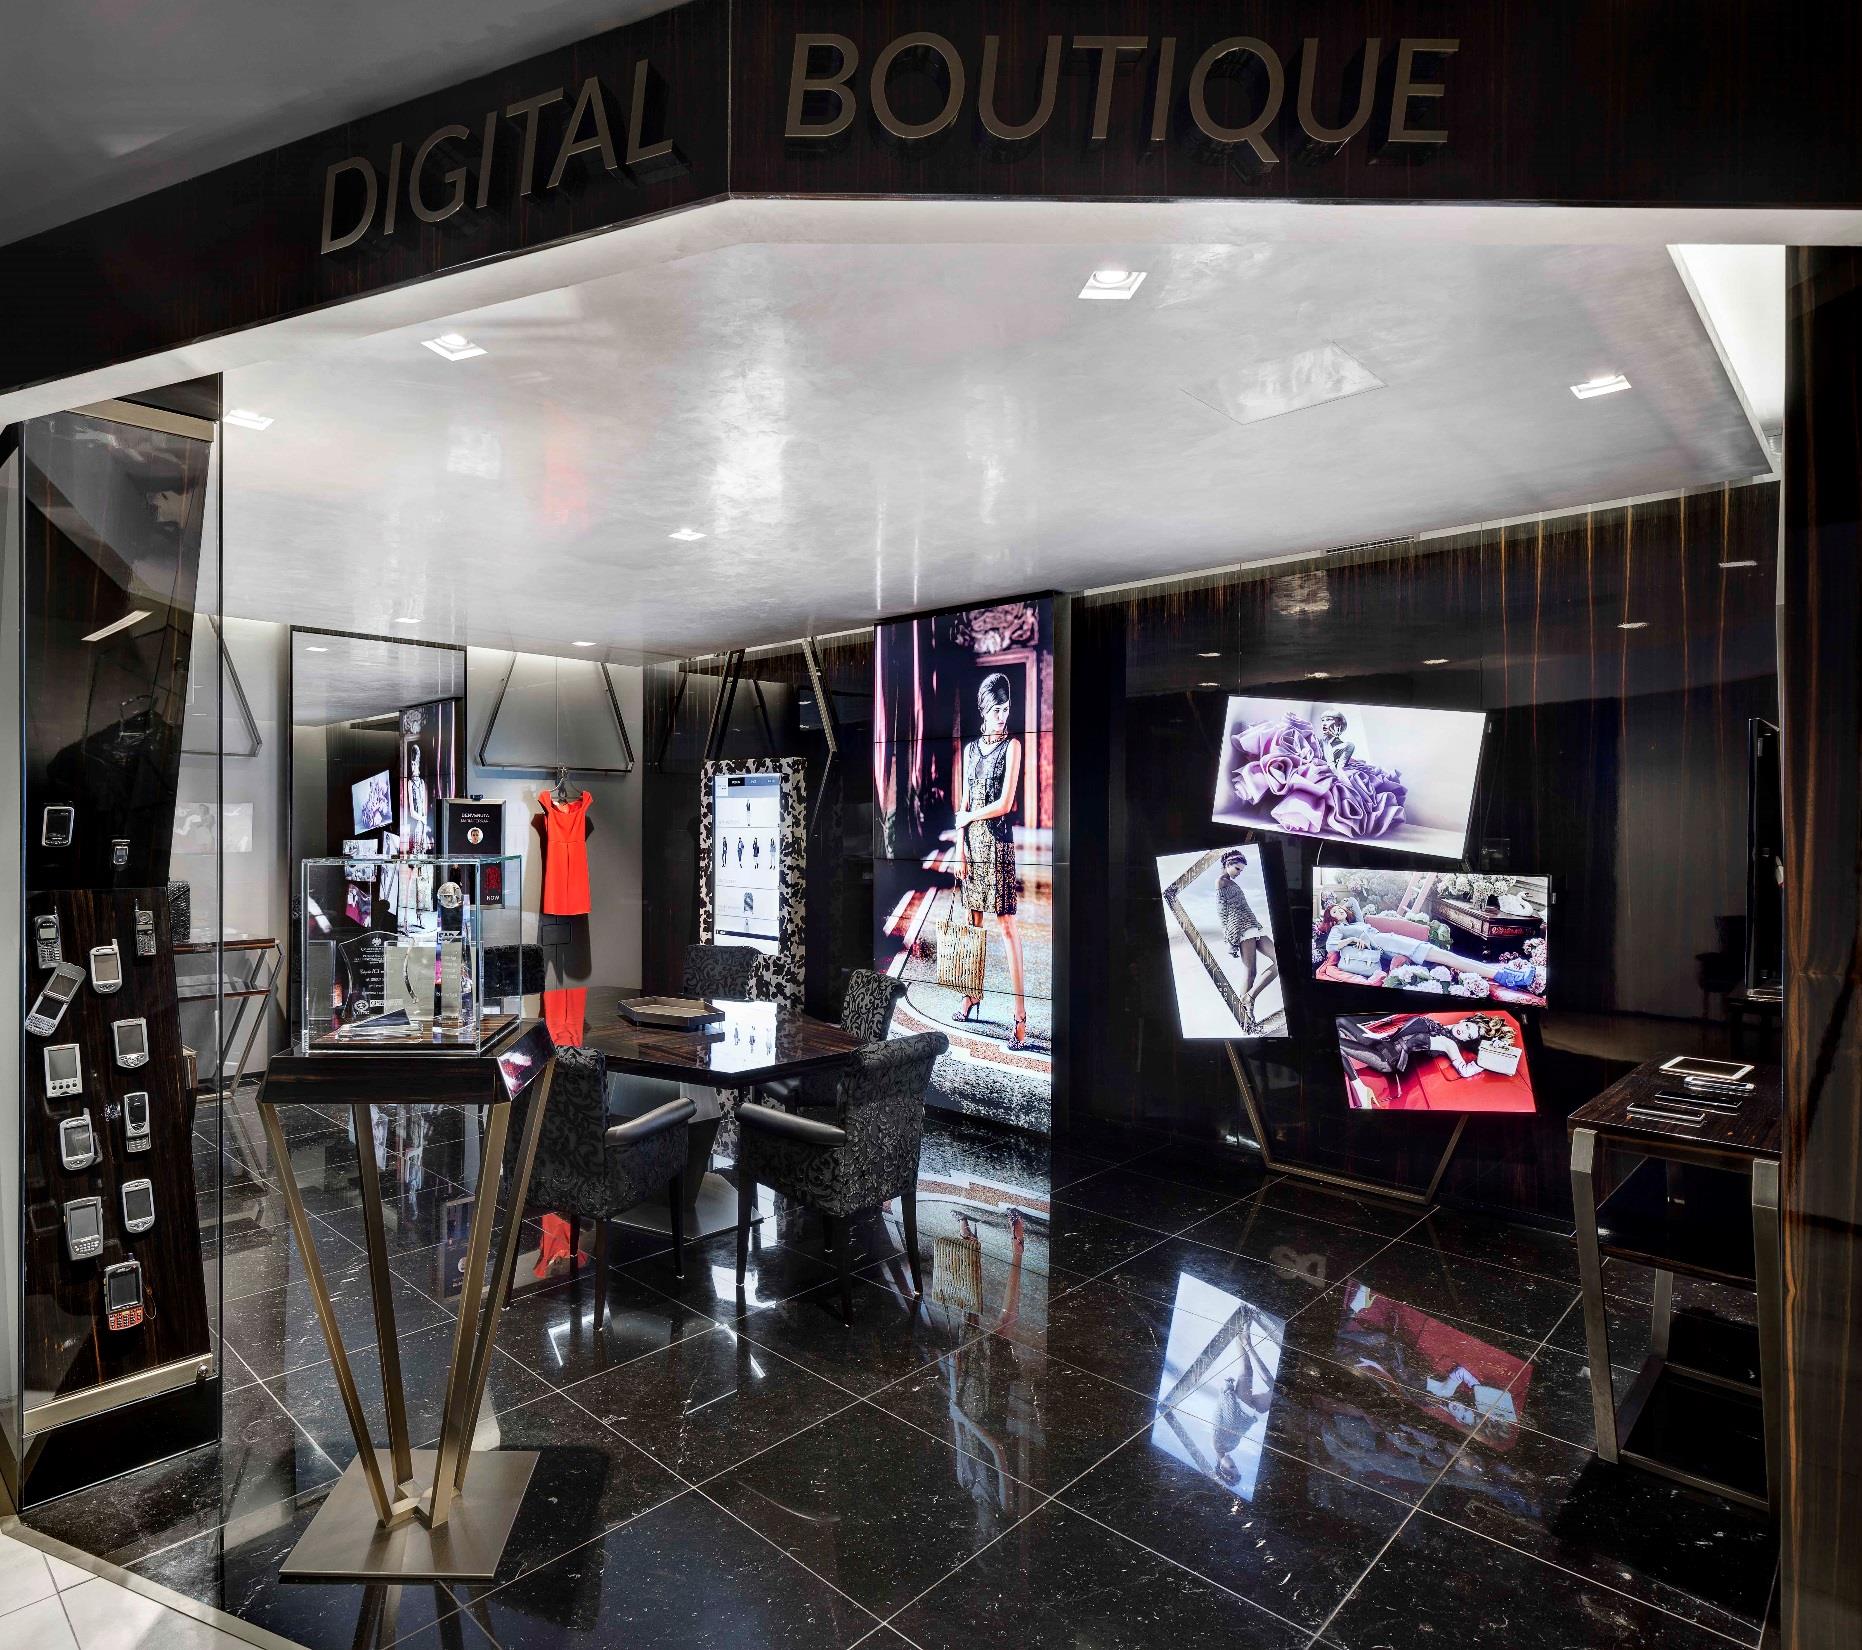 UN PERCORSO ATTRAVERSO L INNOVAZIONE La Digital Boutique è stata creata per coprire con l innovazione